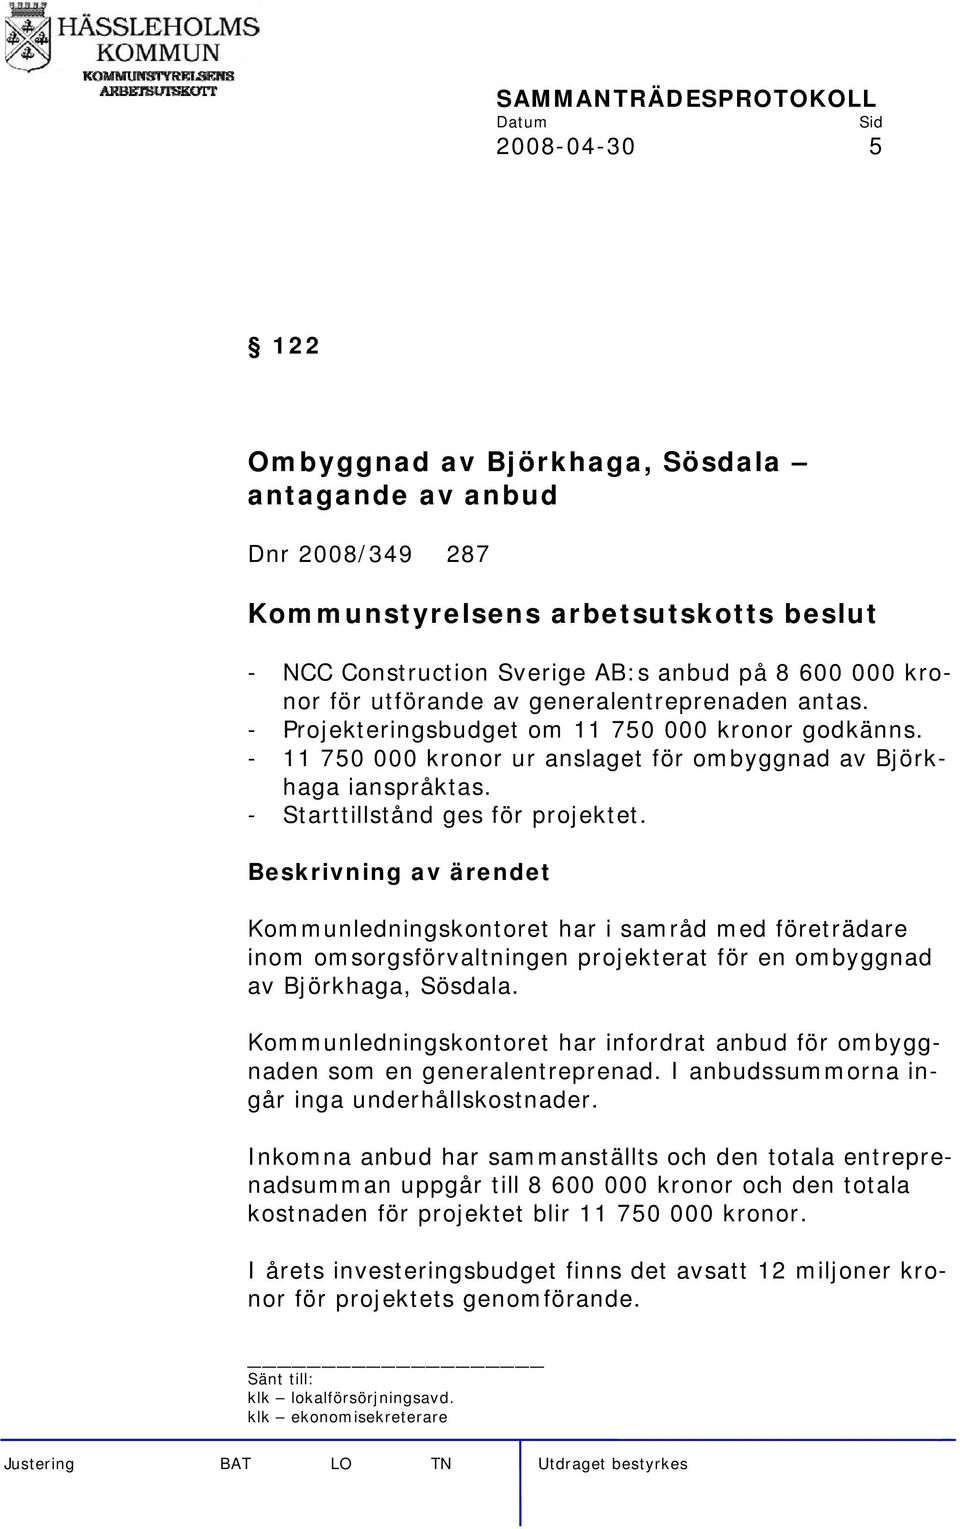 Kommunledningskontoret har i samråd med företrädare inom omsorgsförvaltningen projekterat för en ombyggnad av Björkhaga, Sösdala.